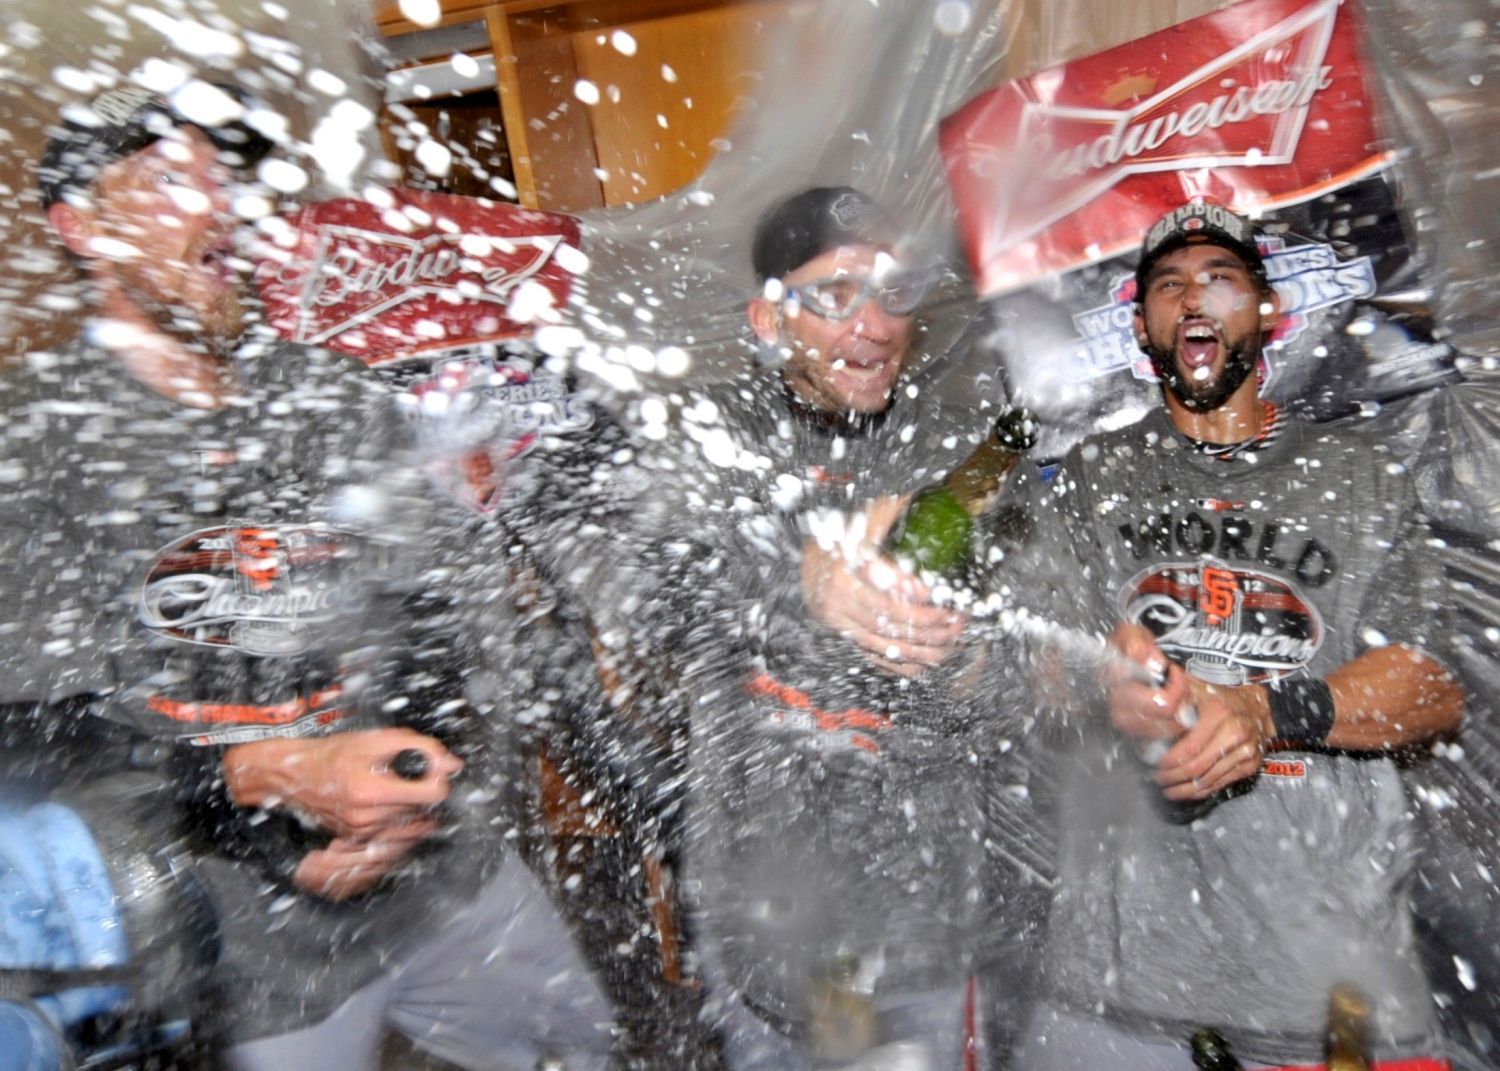 Oslavy titulu v MLBI 2012 pro San Francisco Giants.